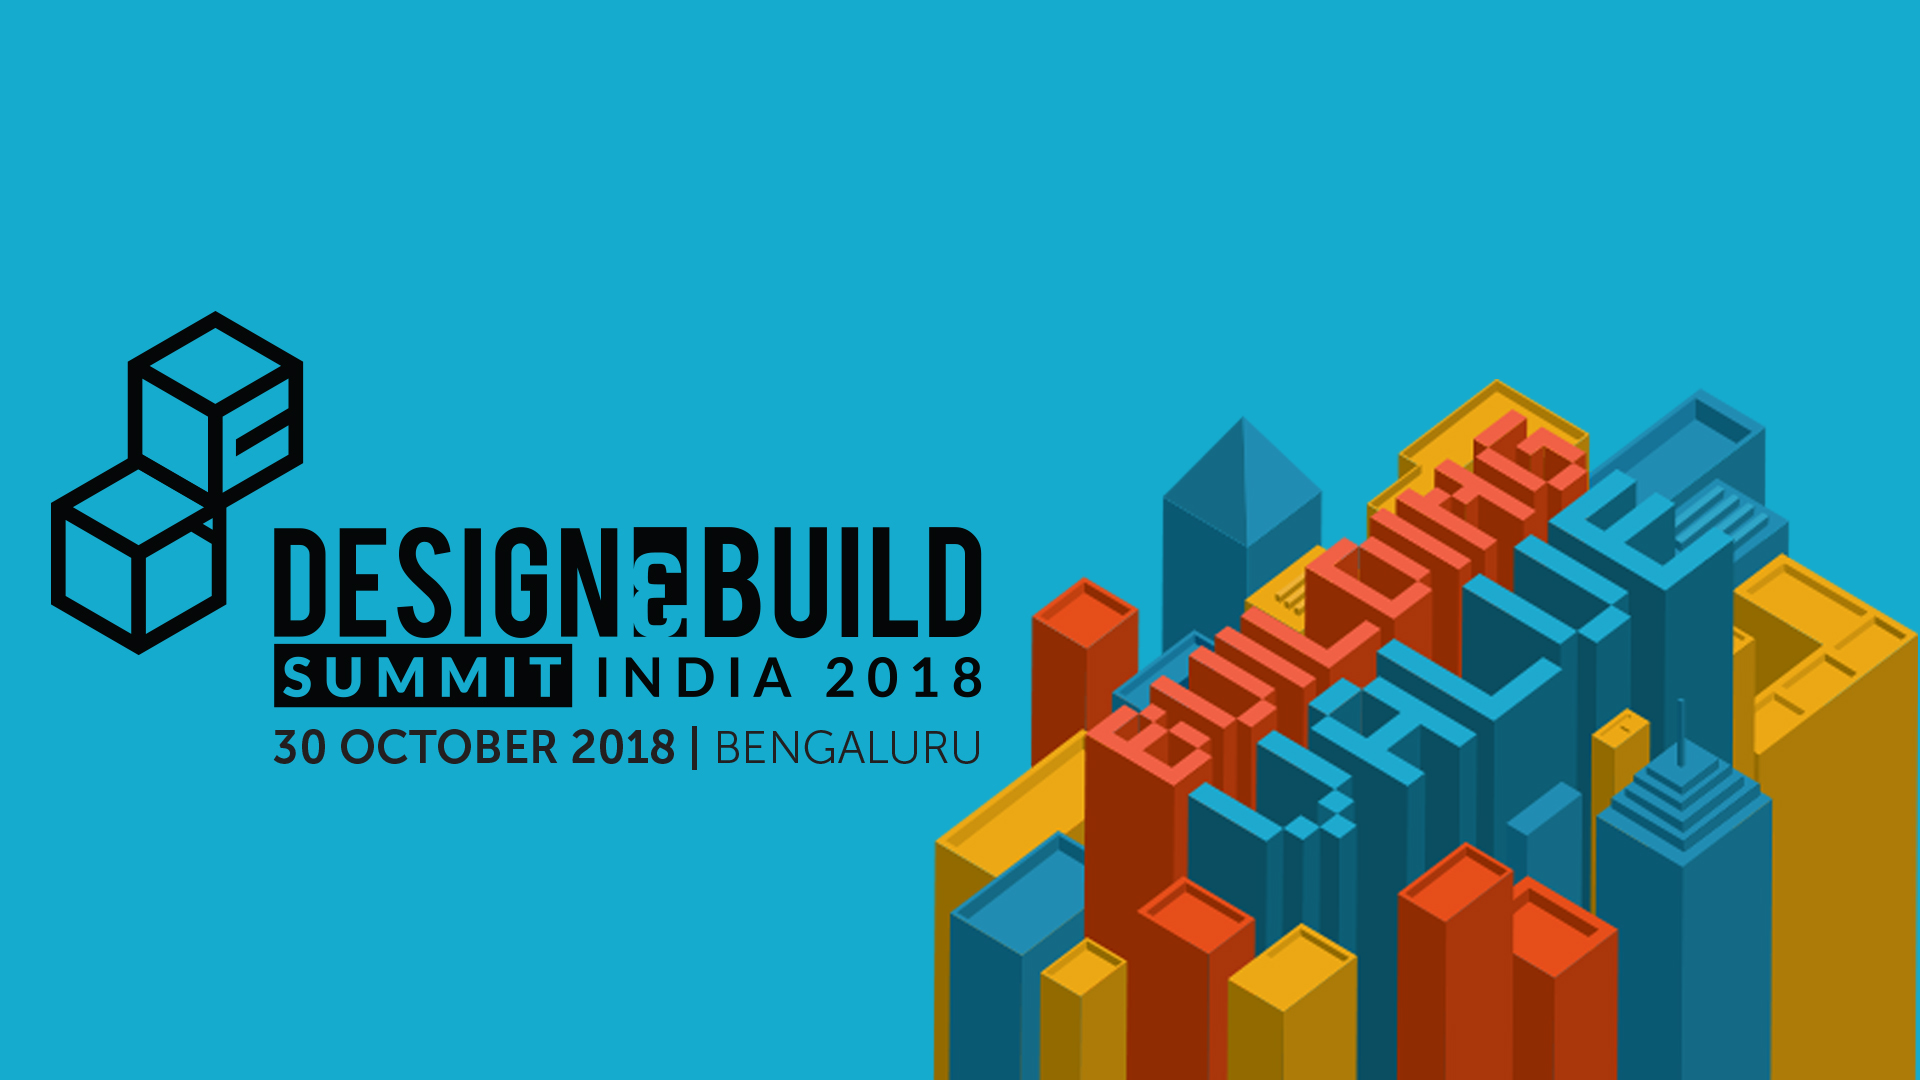 Design & Build Summit India 2018, Bangalore, Karnataka, India